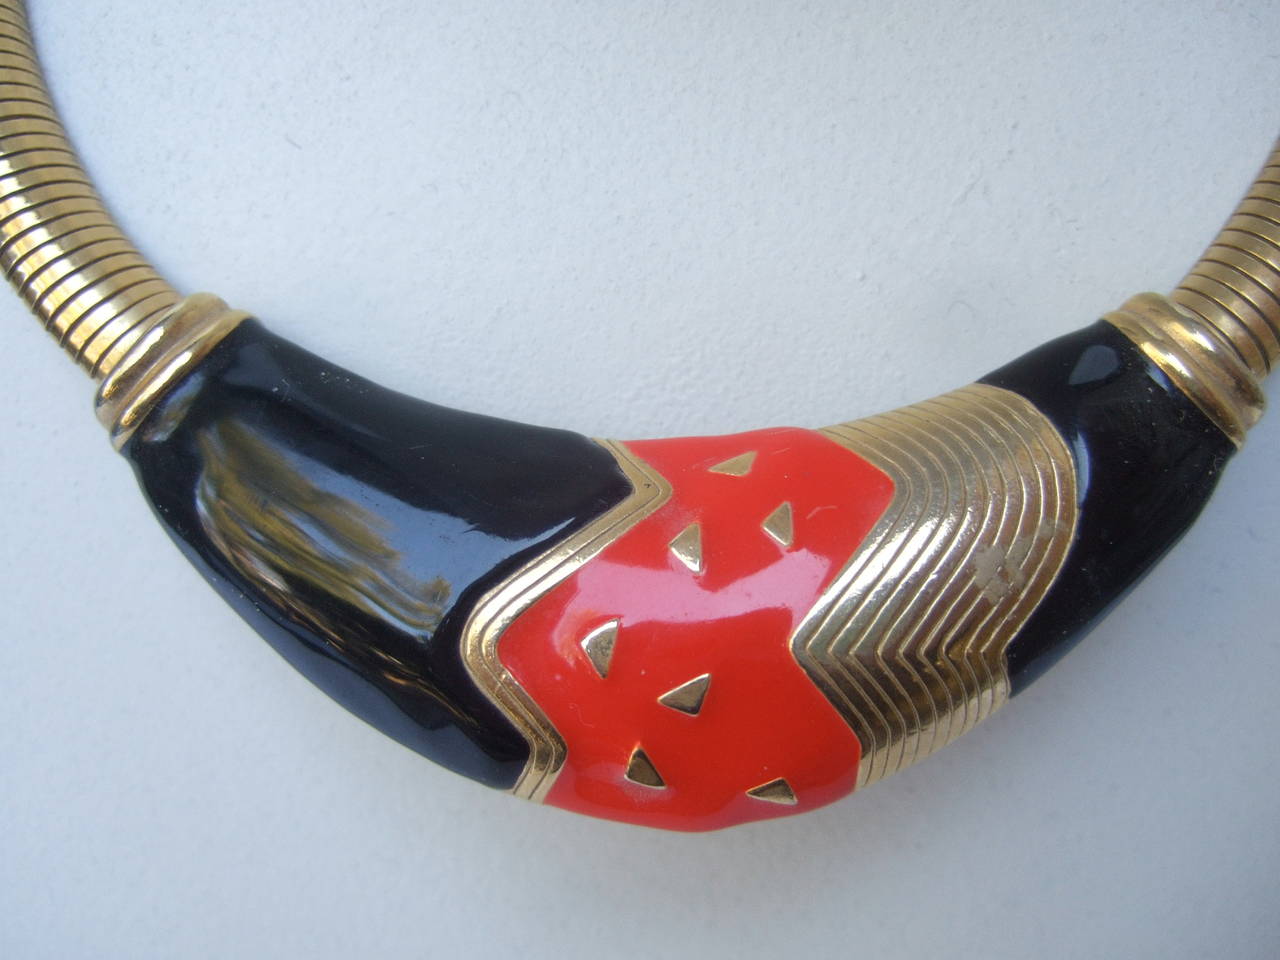 Elegantes schwarzes & rotes Emaille vergoldetes Metall Halskette Stil c 1980
Die stilvolle Halskette ist mit einer kühnen abstrakten Plakette in der Mitte gestaltet
Die rot-schwarze Emaille wird mit vergoldeten Metallakzenten kontrastiert

Die